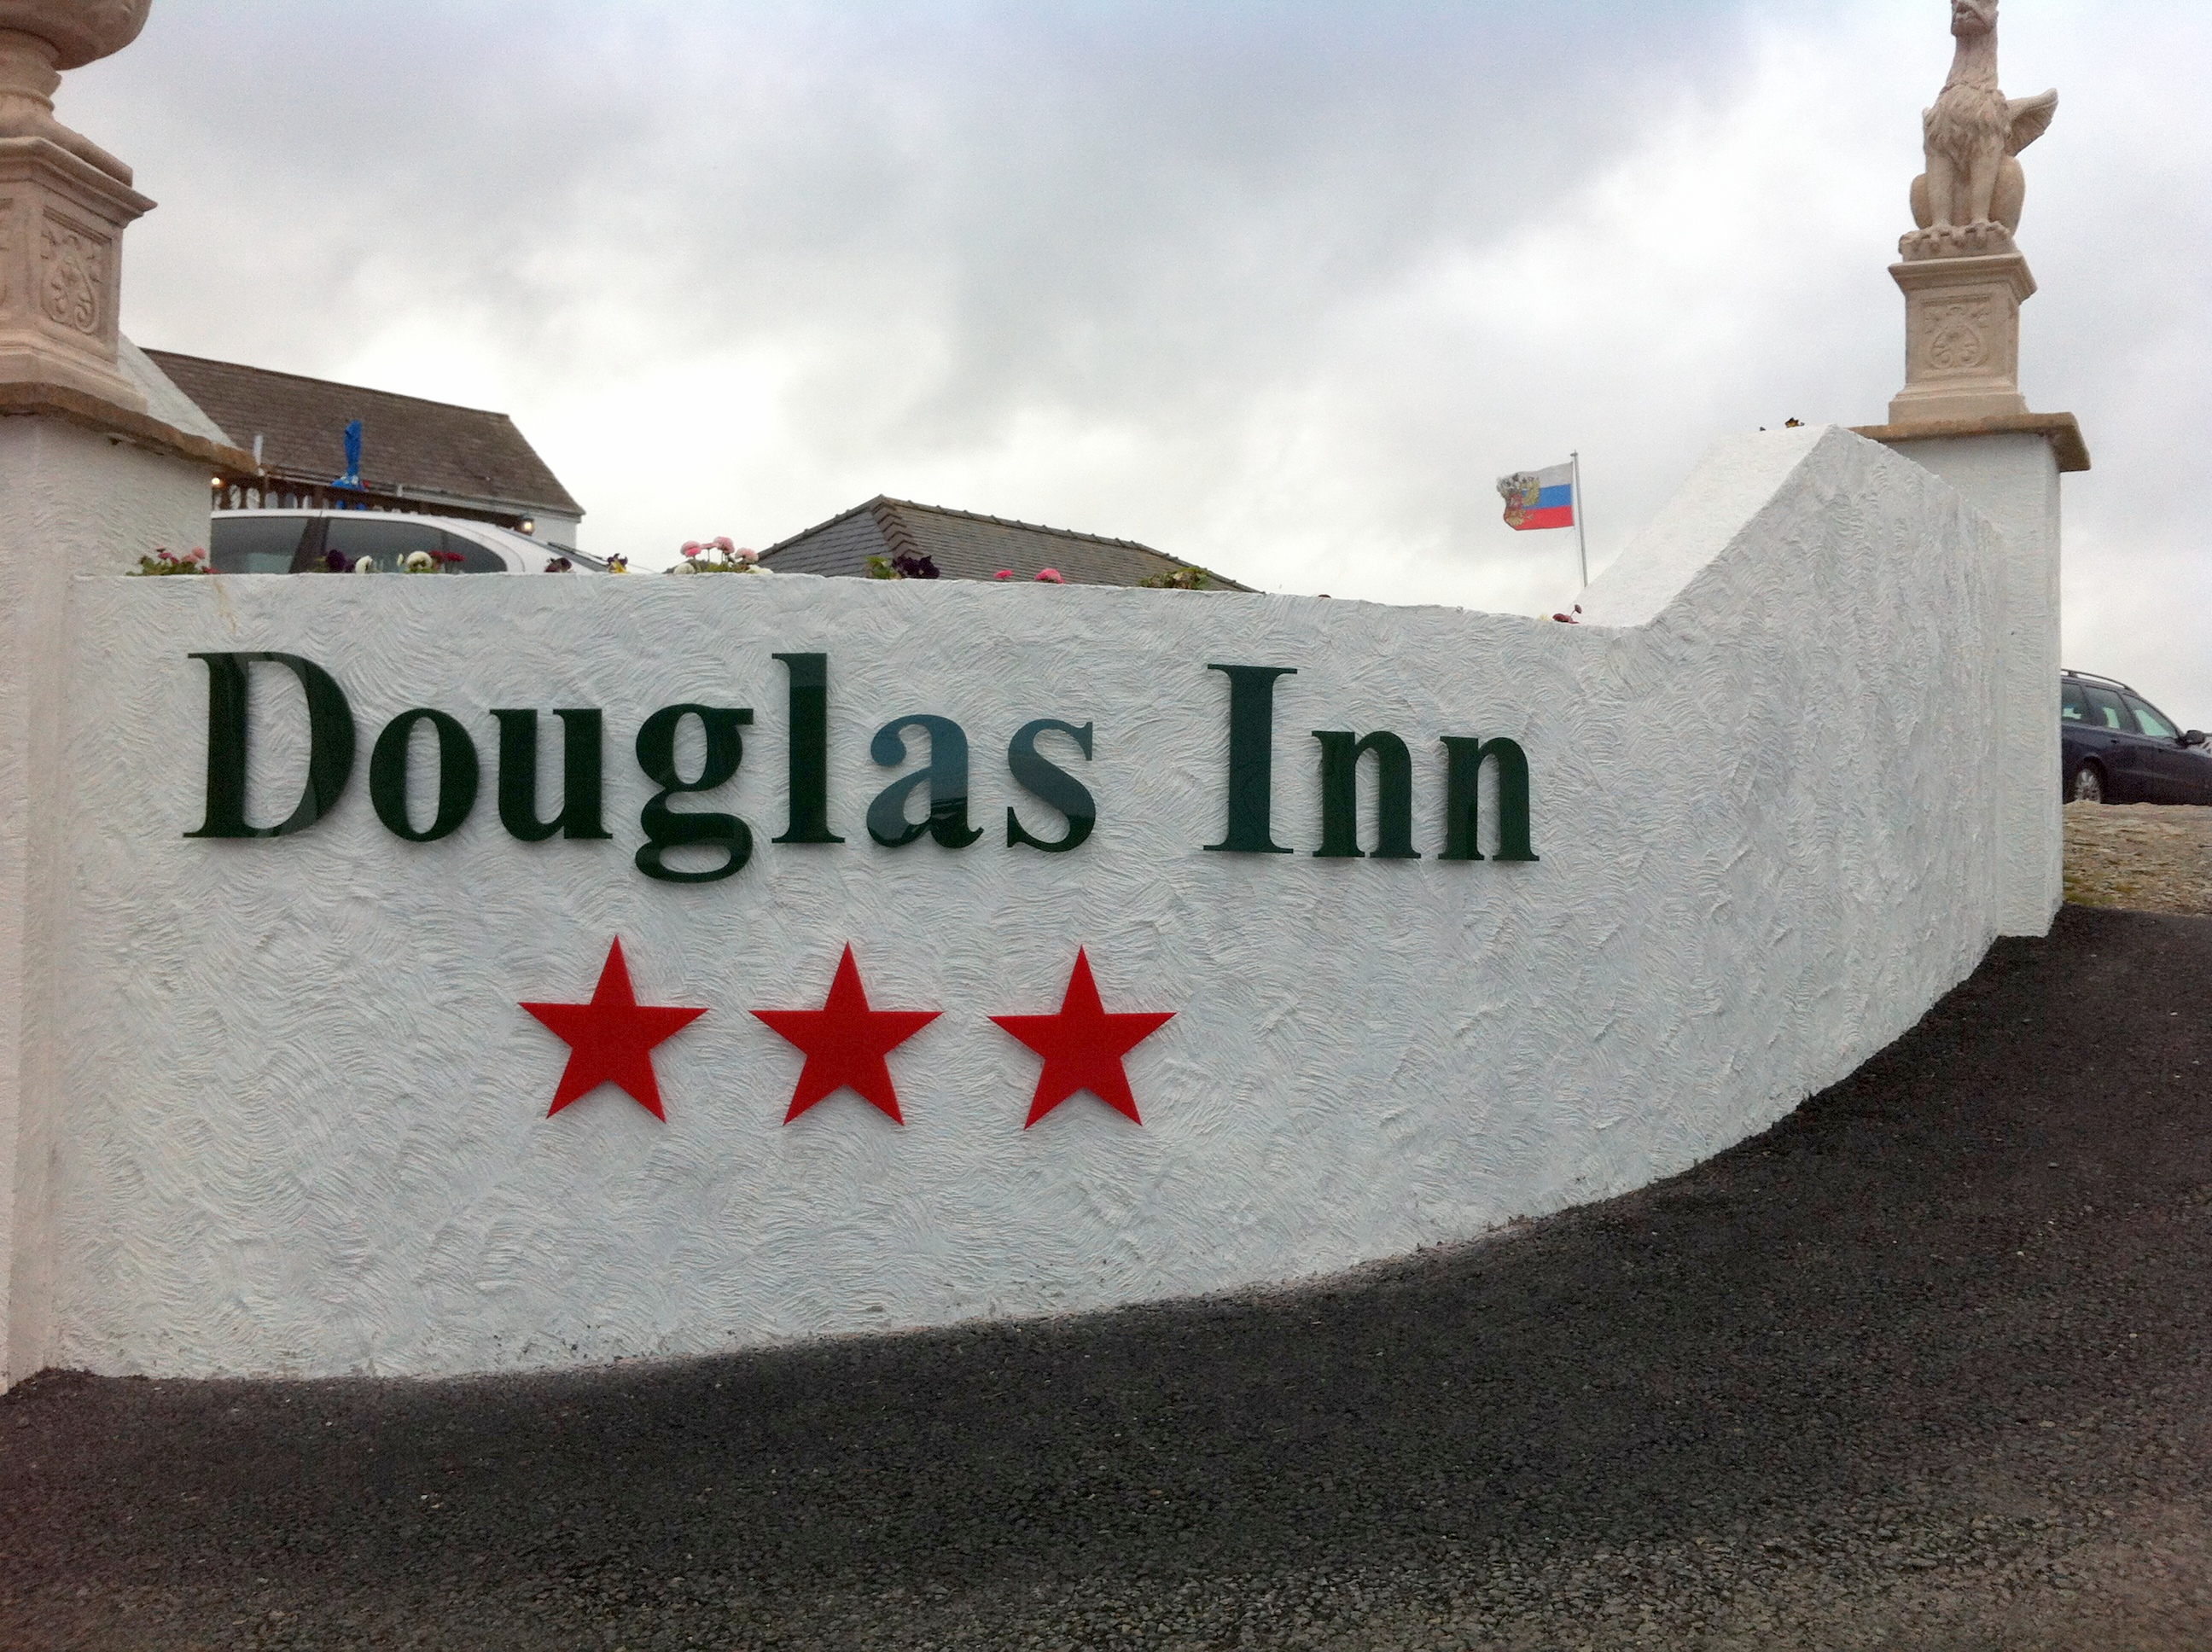 Douglass Inn letters and stars